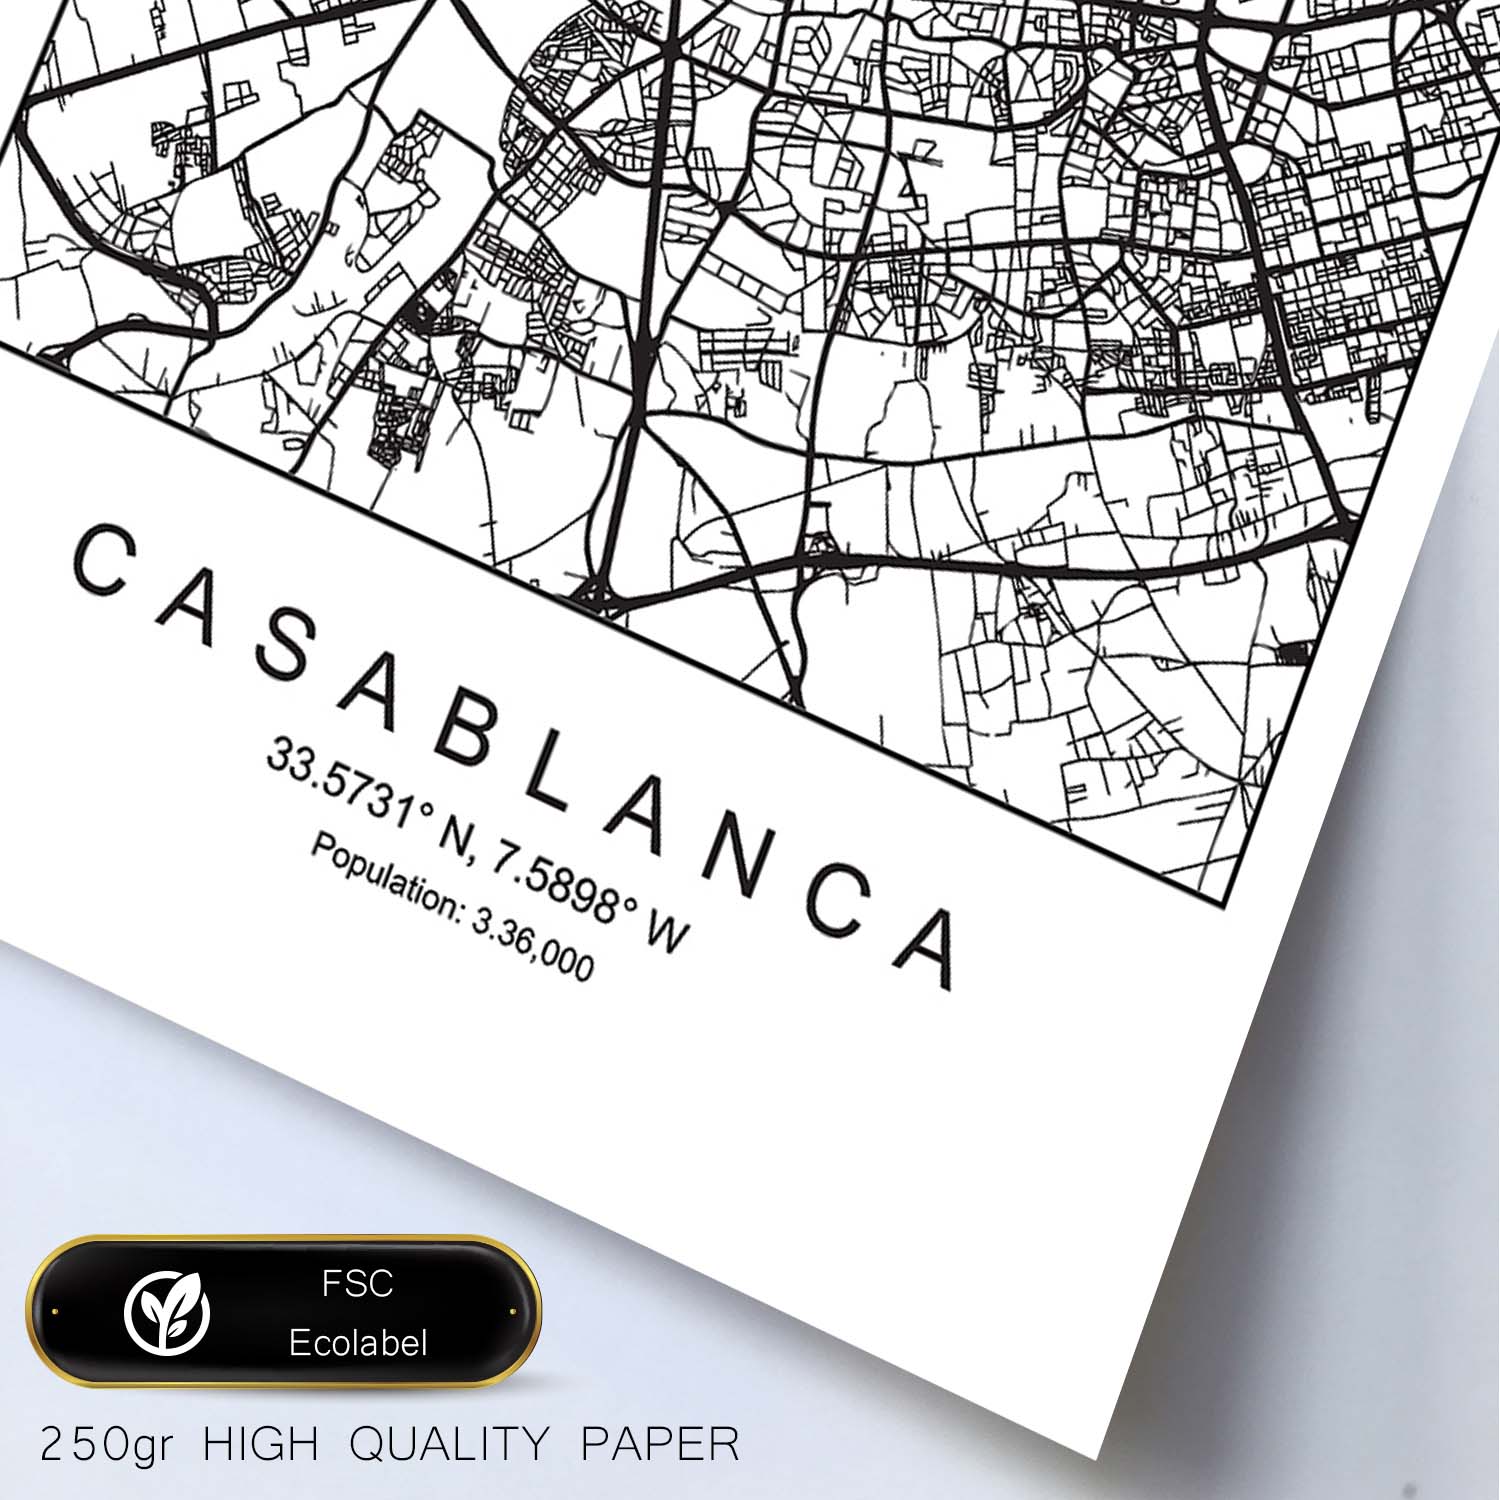 Lámina mapa de la ciudad Casablanca estilo nordico en blanco y negro.-Artwork-Nacnic-Nacnic Estudio SL